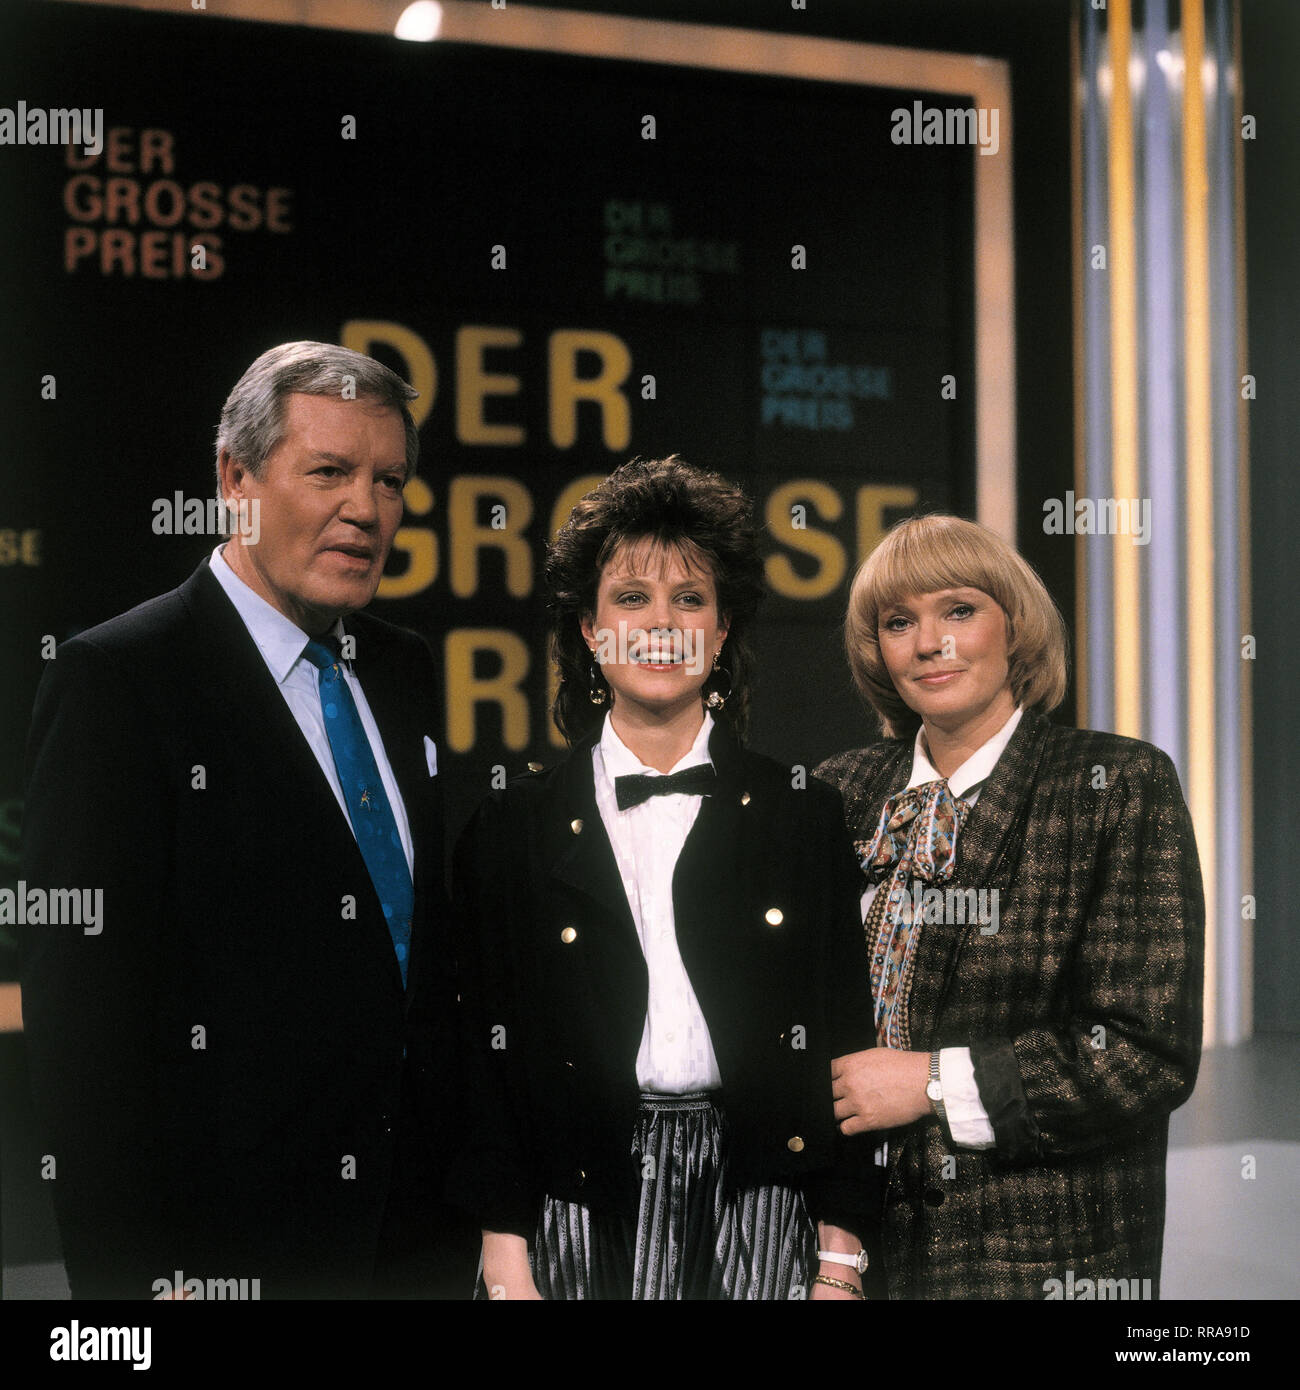 DER GROSSE PREIS / WIM THOELKE mit neuer Assistentin KAROLINE REINHARDT und BEATE HOPF, 1988 EM / Überschrift: DER GROSSE PREIS Foto Stock